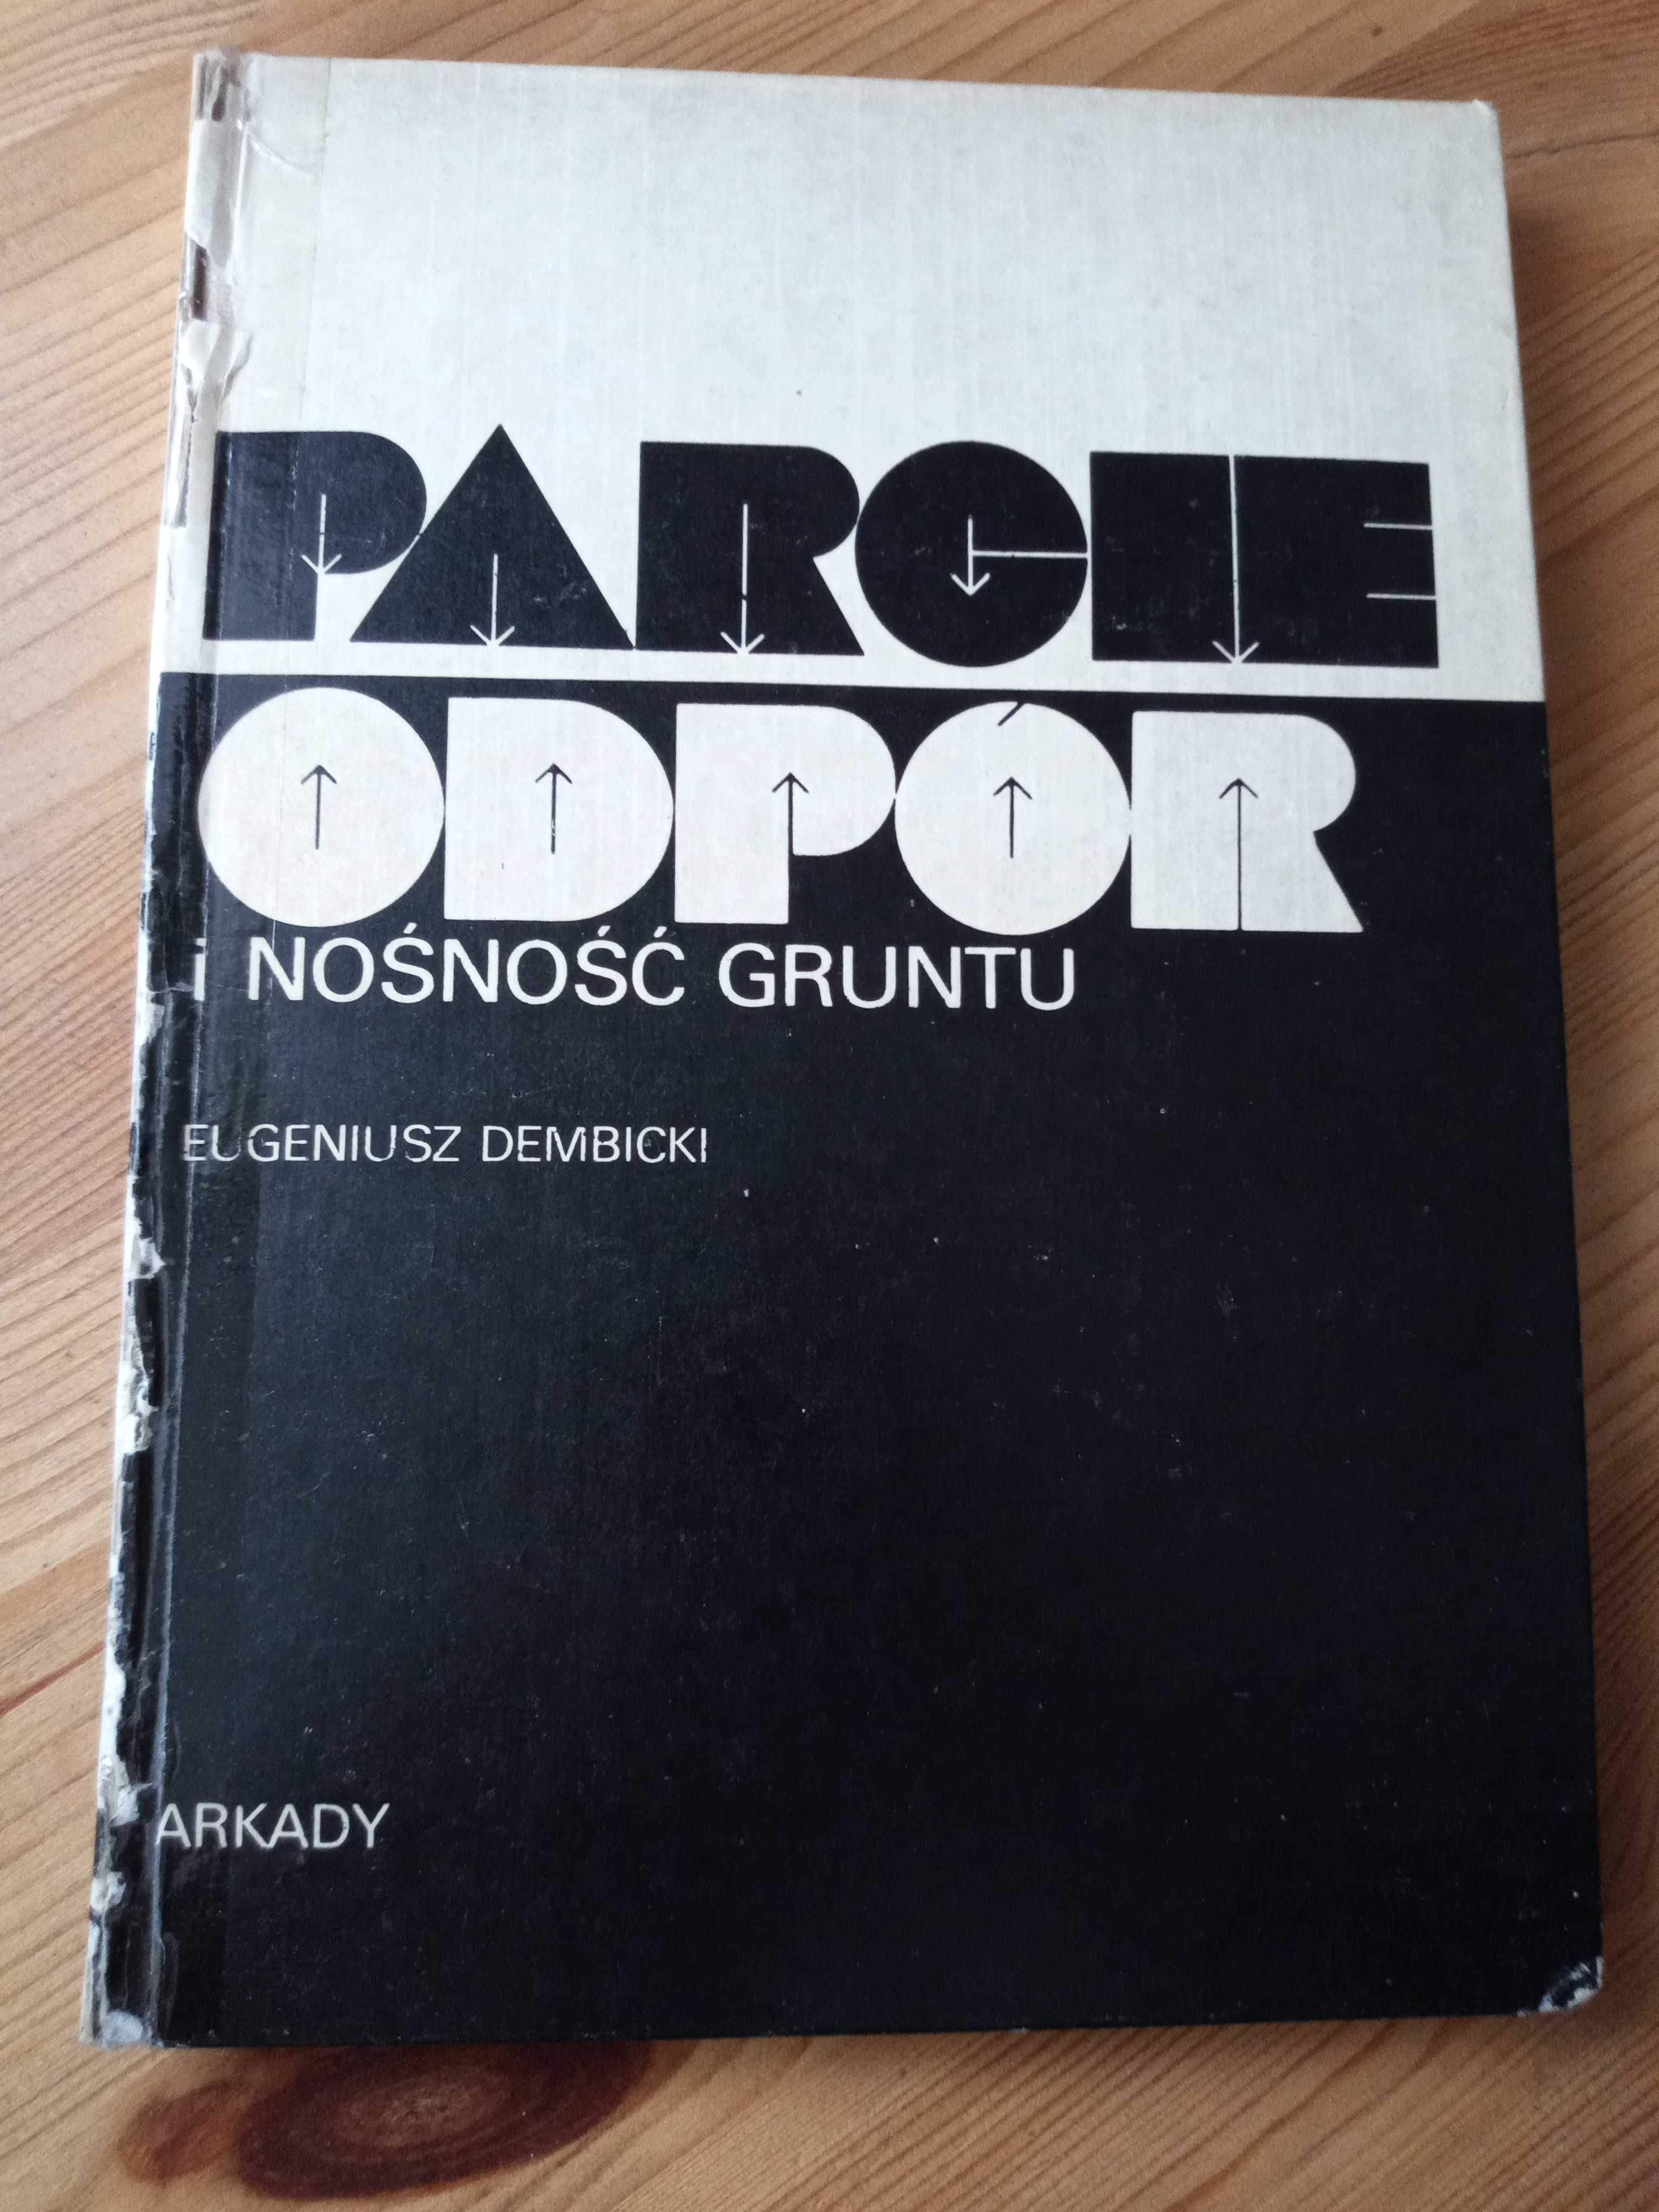 Książka Parcie odpór i nośność gruntu Eugeniusz Dembicki